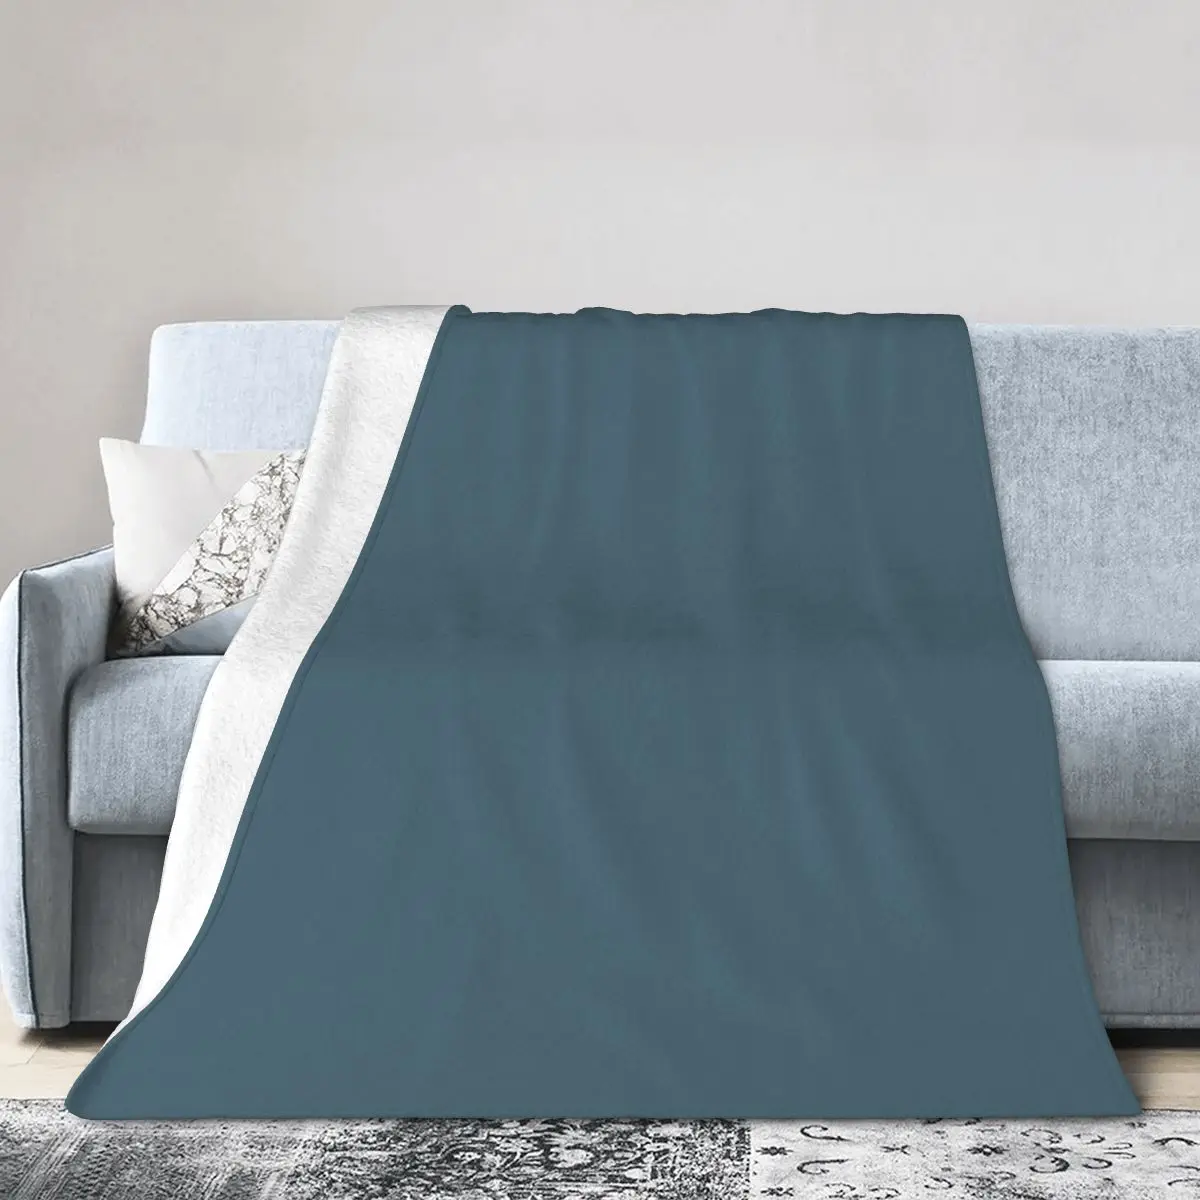 

Bedspread Bed Cover Soft Bed Blanket Kids Decor Sofa Blanket solid color minimalist Morandi shades Travel Portable Wind Blanket